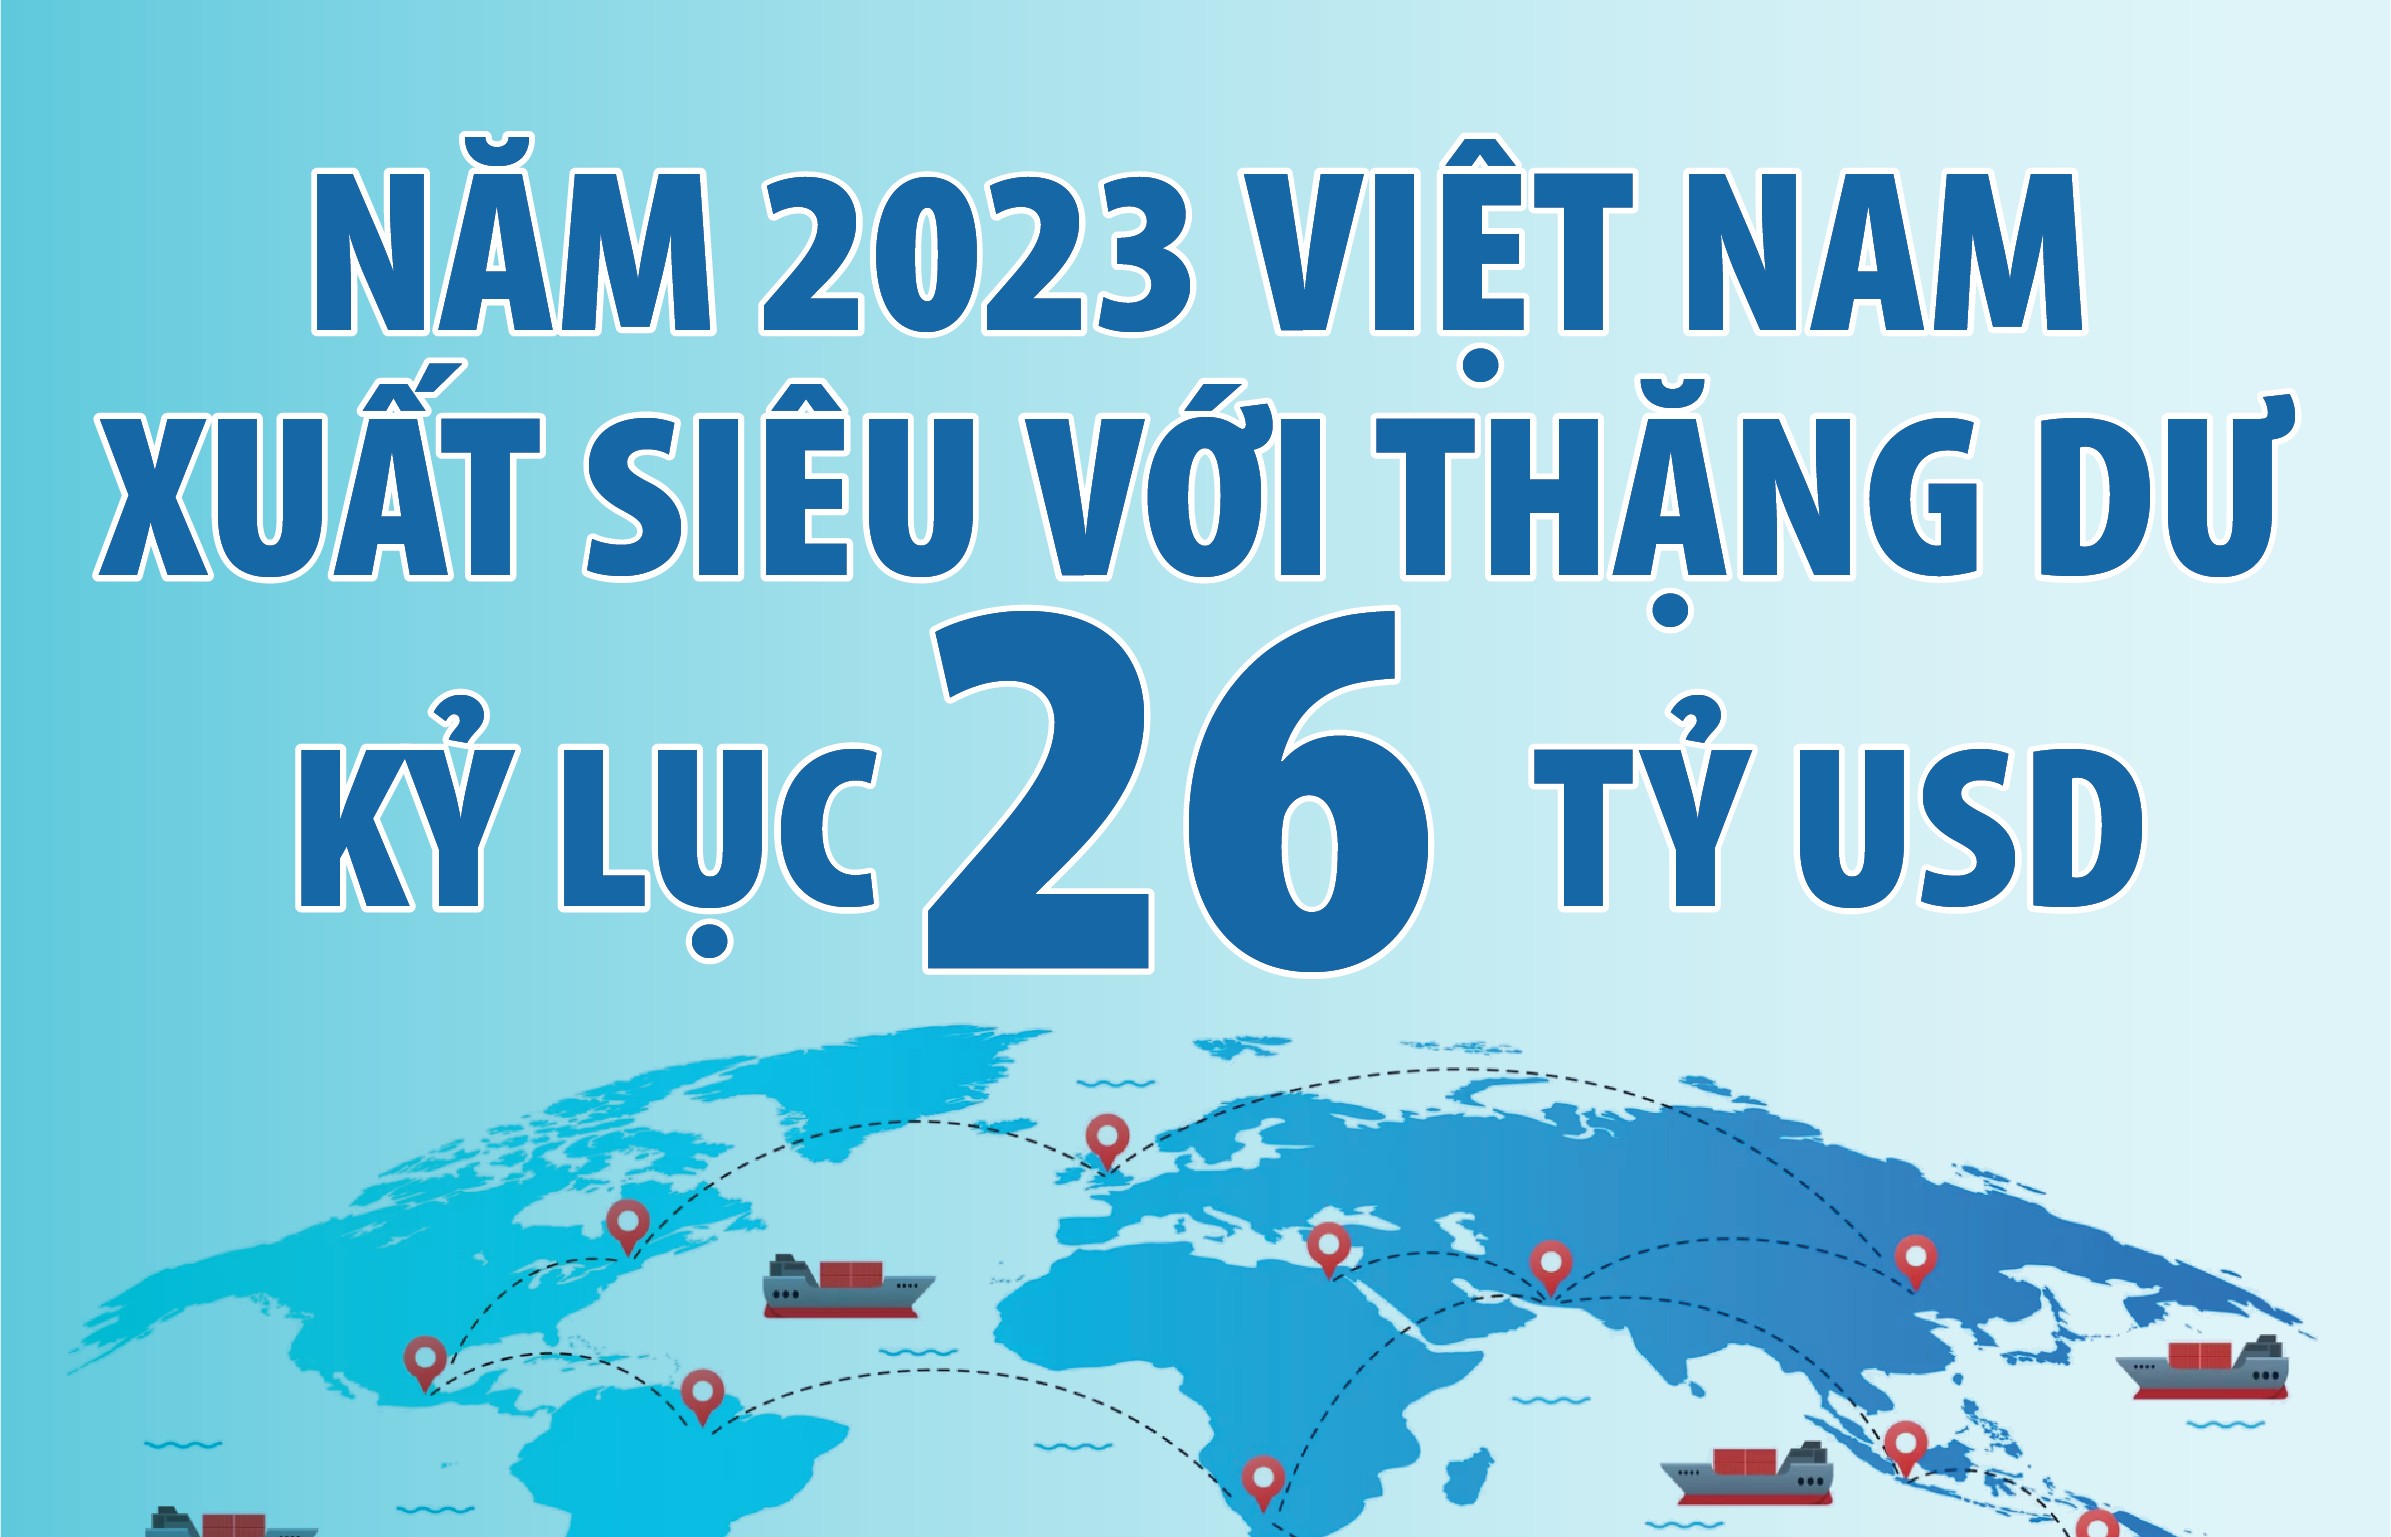 Việt Nam xuất siêu năm thứ 8 liên tiếp với thặng dư kỷ lục 26 tỷ USD